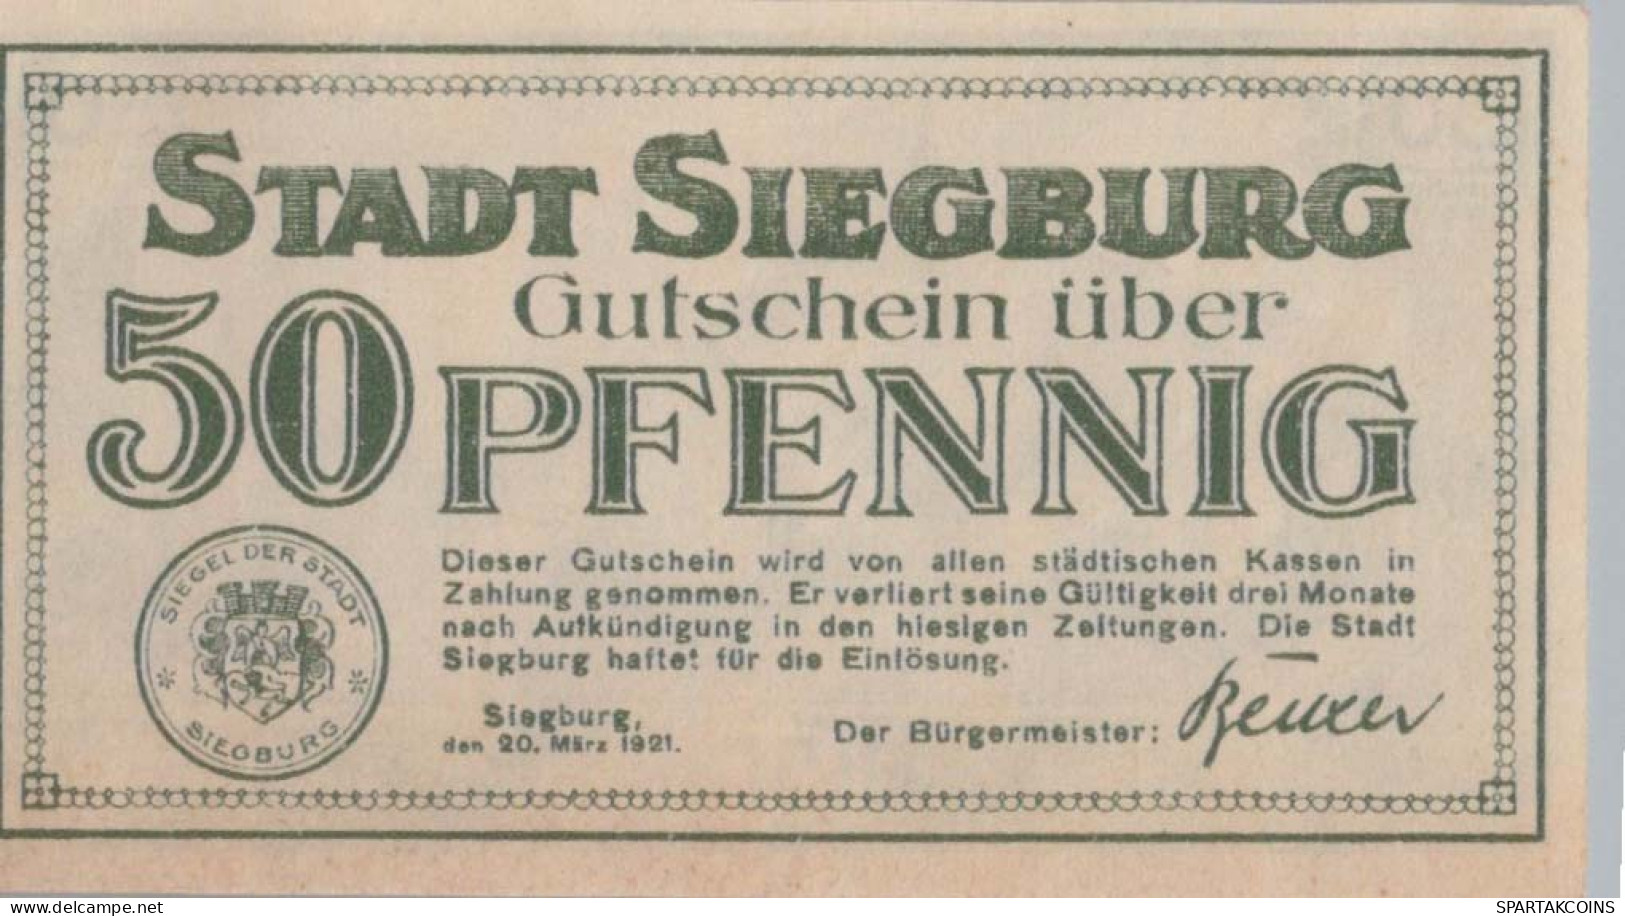 50 PFENNIG 1921 Stadt SIEGBURG Rhine DEUTSCHLAND Notgeld Banknote #PG046 - [11] Local Banknote Issues